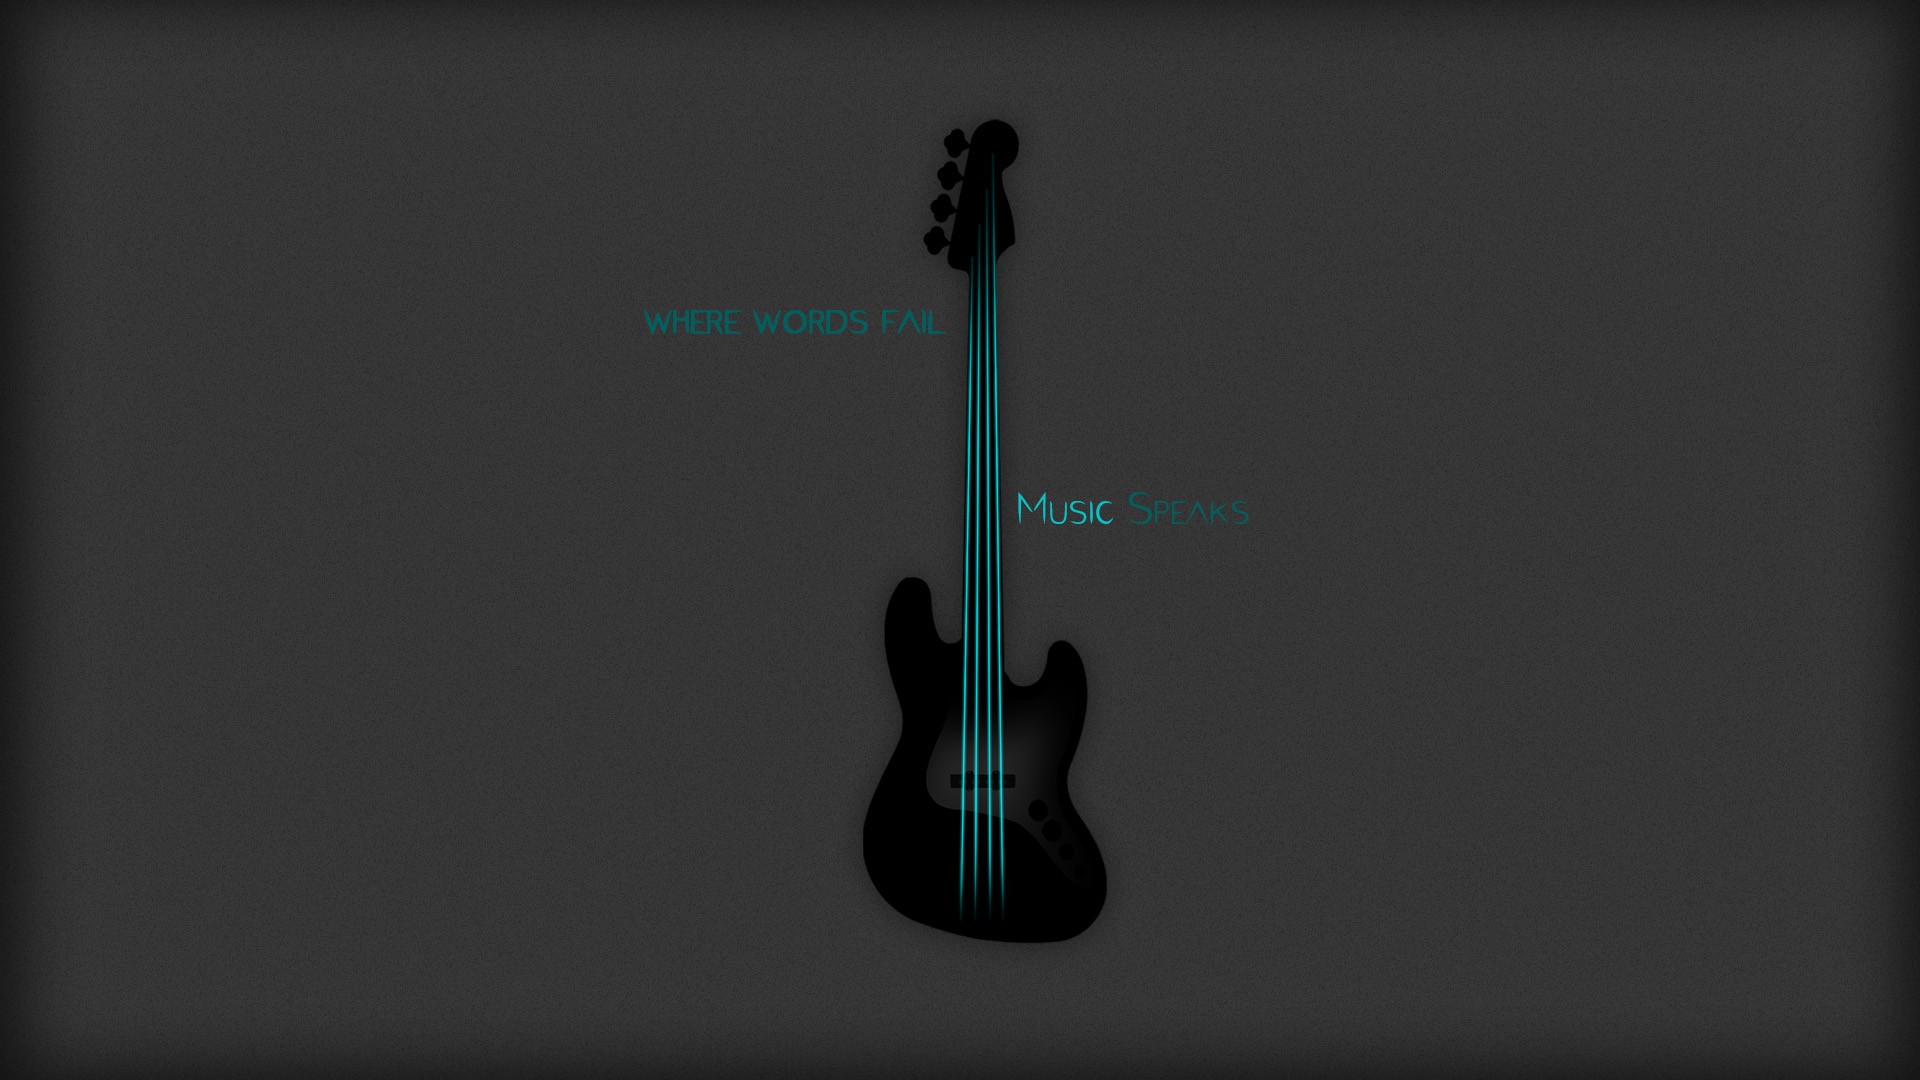 General 1920x1080 guitar music musical instrument minimalism bass guitars DeviantArt digital art simple background text